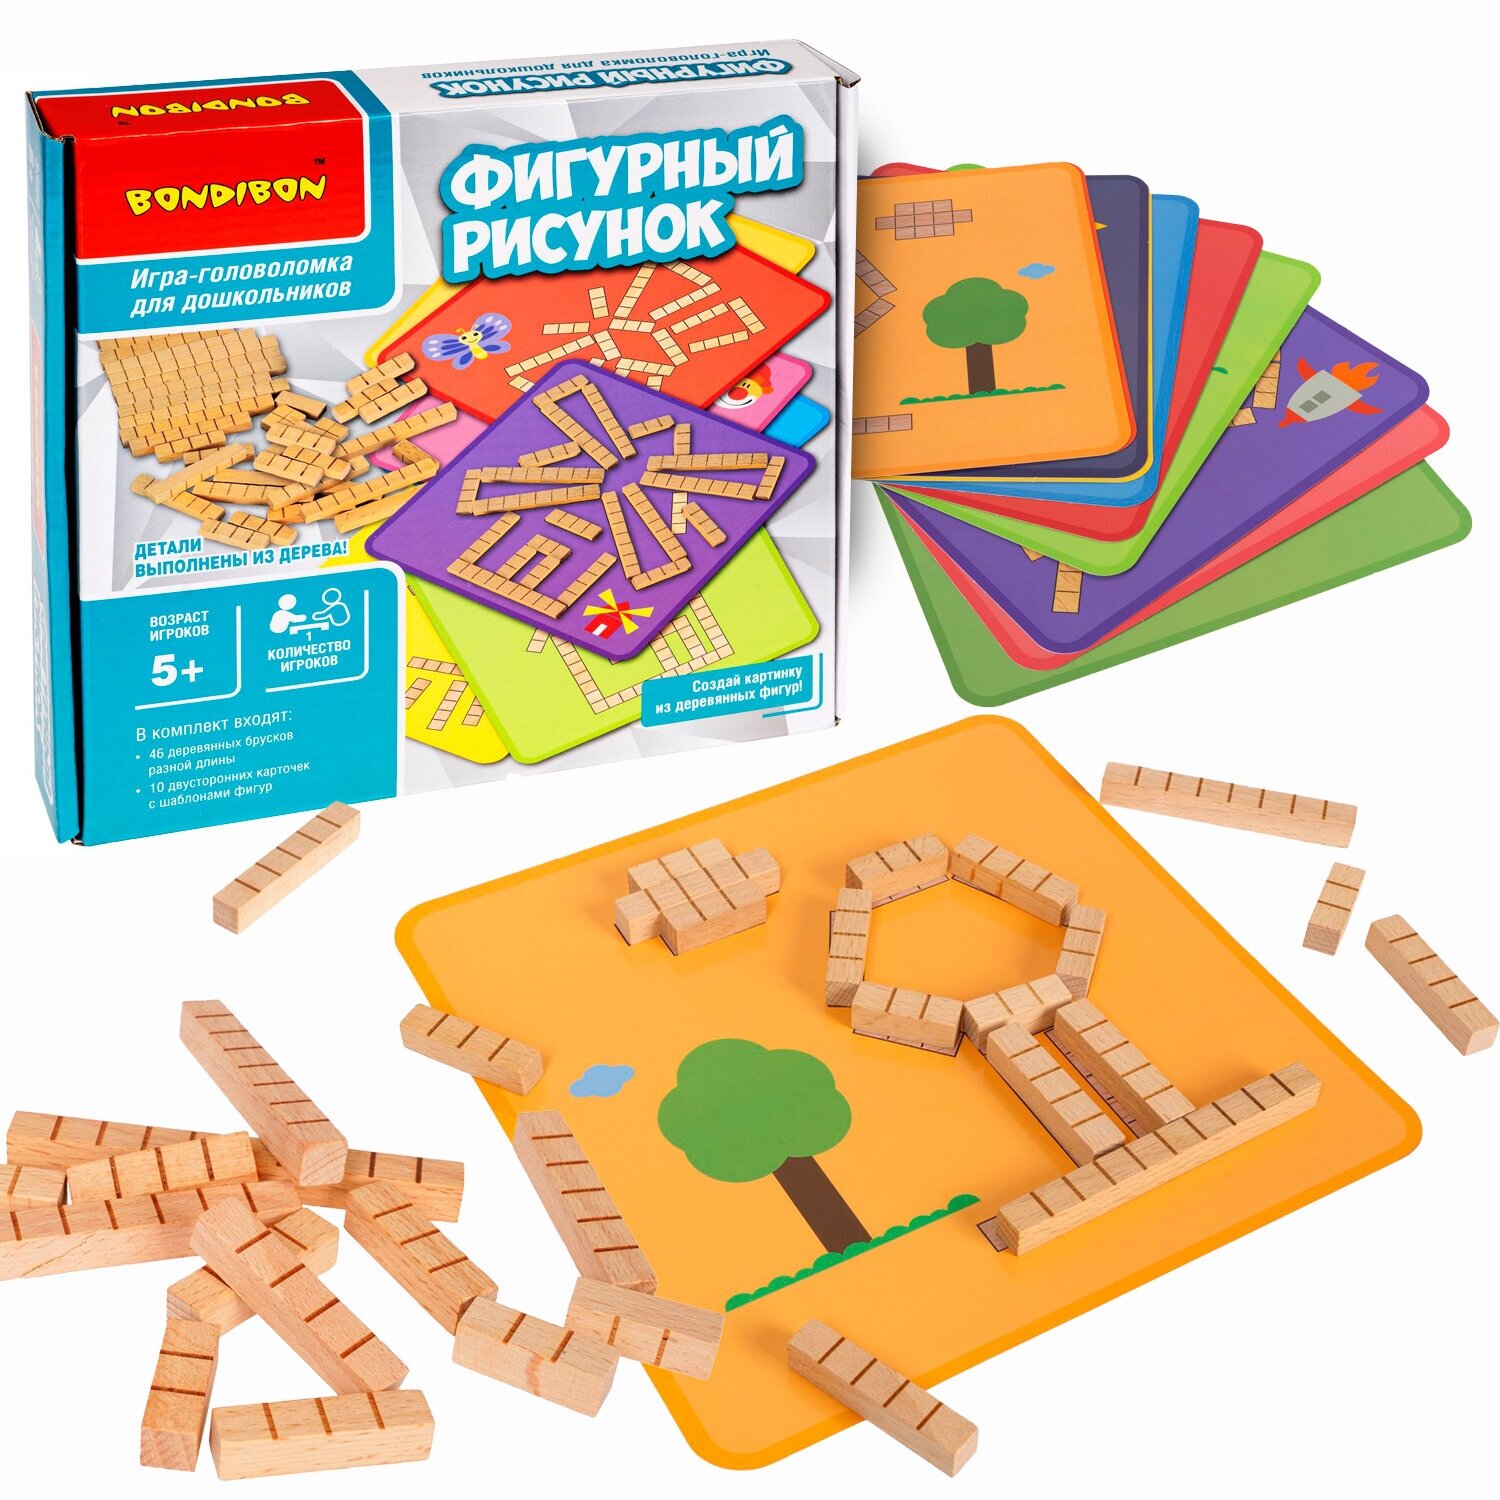 Развивающая игра головоломка для детей фигурный рисунок Bondibon деревянная игрушка конструктор из палочек для мелкой моторики, 46 брусочков